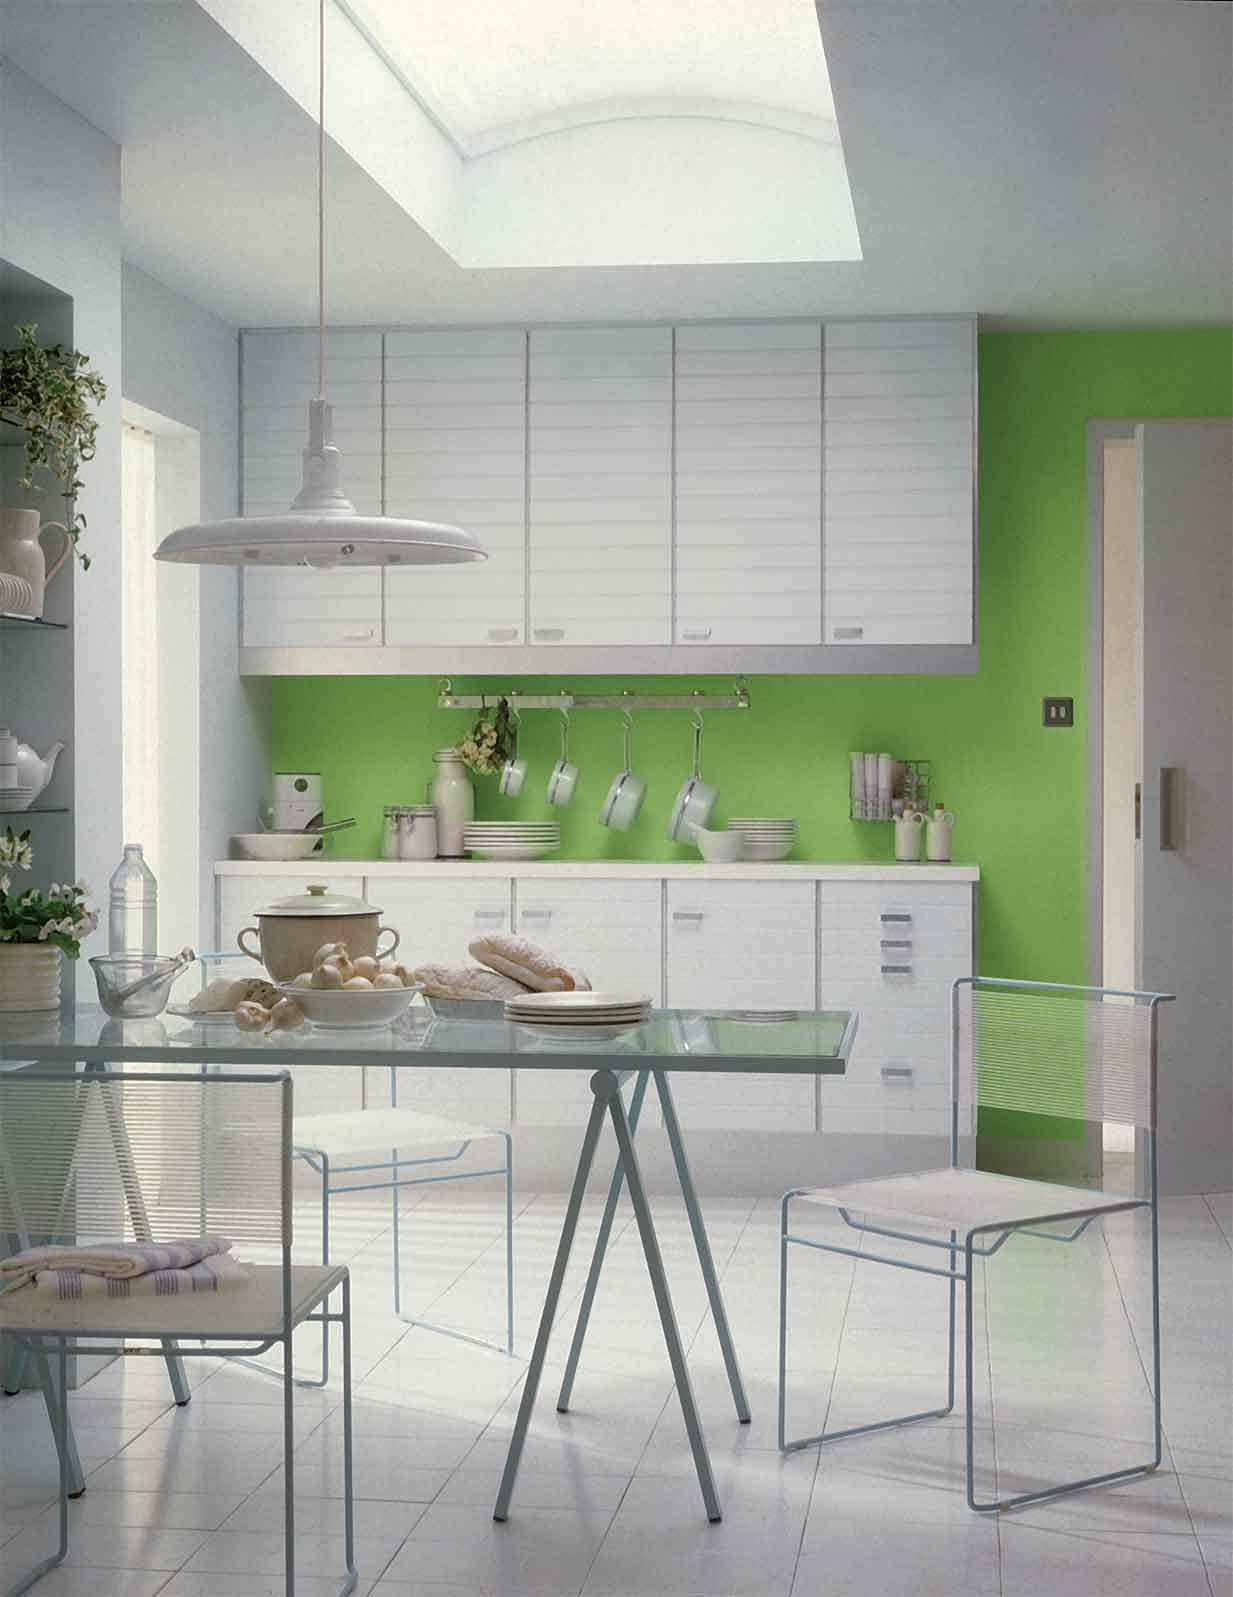 Дизайн покраски кухни. Кухонный интерьер. Кухня зеленого цвета. Кухня в салатовом цвете. Зеленый цвет стен на кухне.